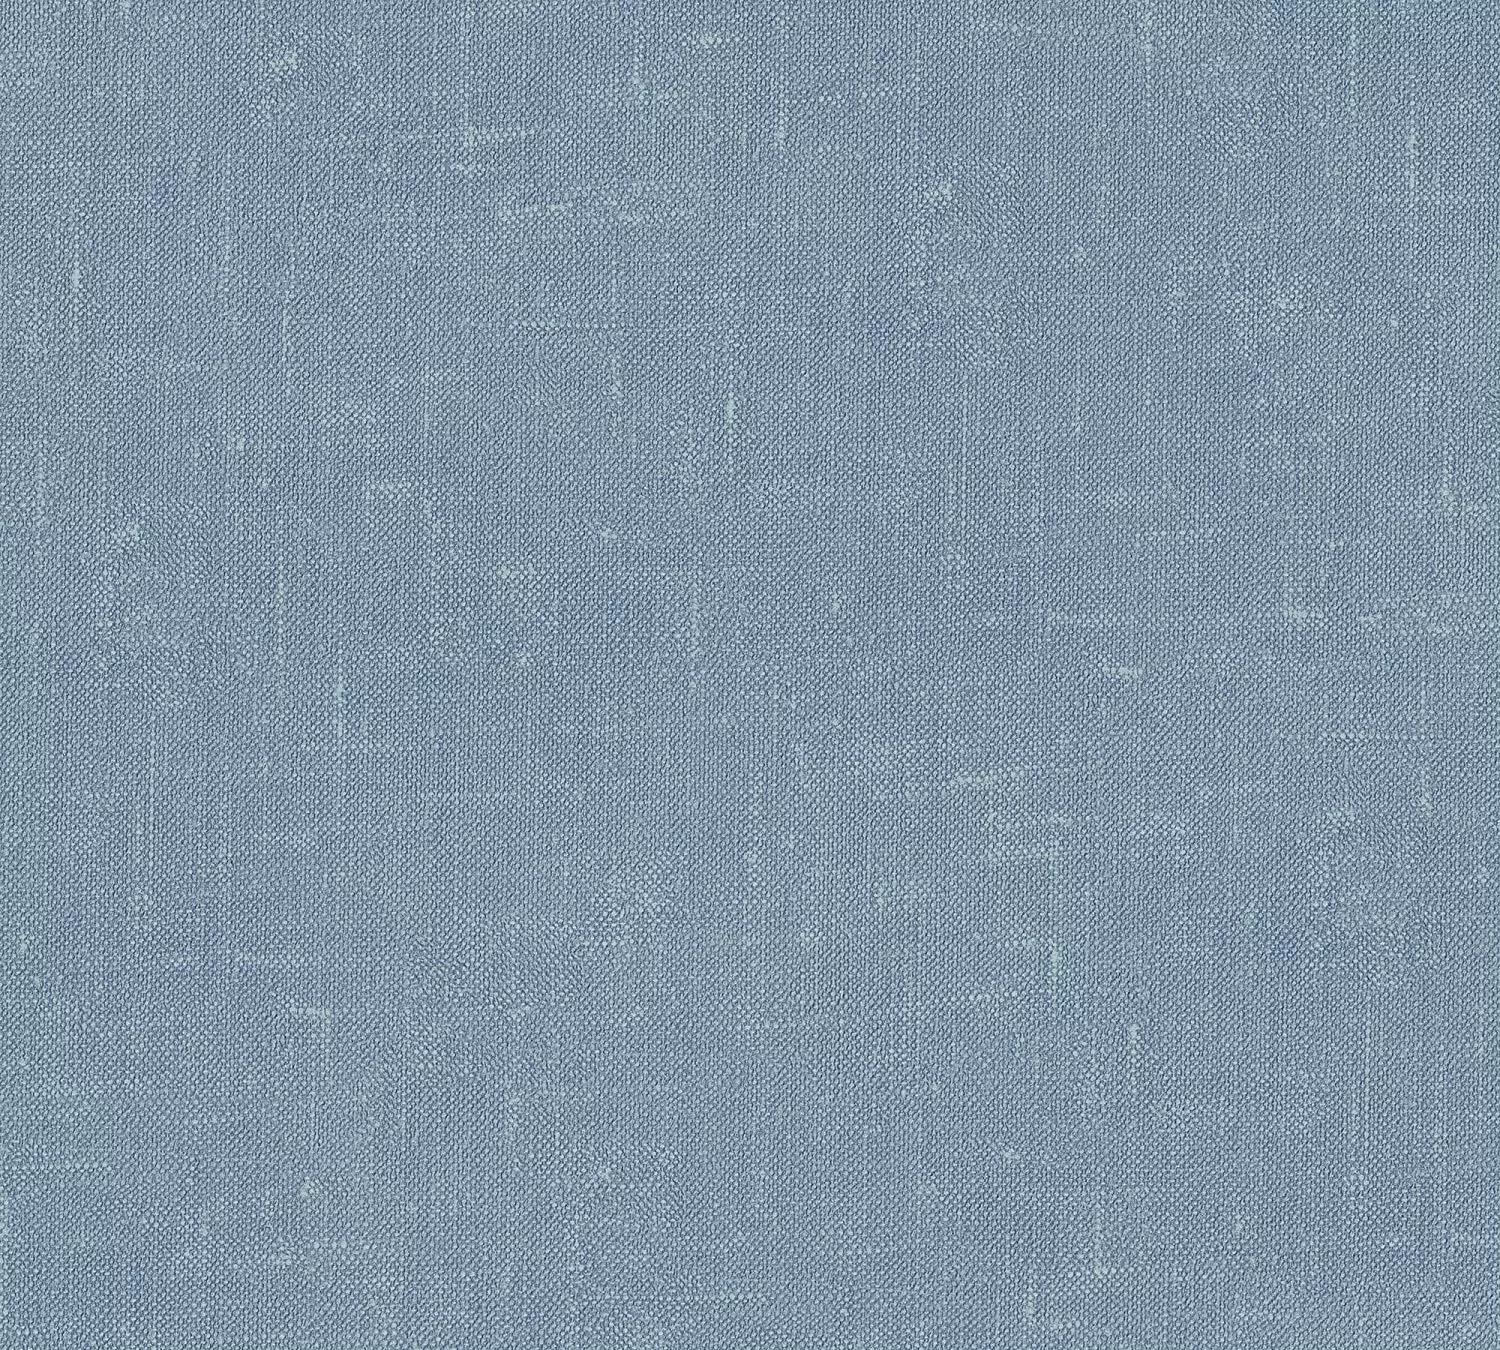 Textil szőtt hatású vlies tapéta kék színben